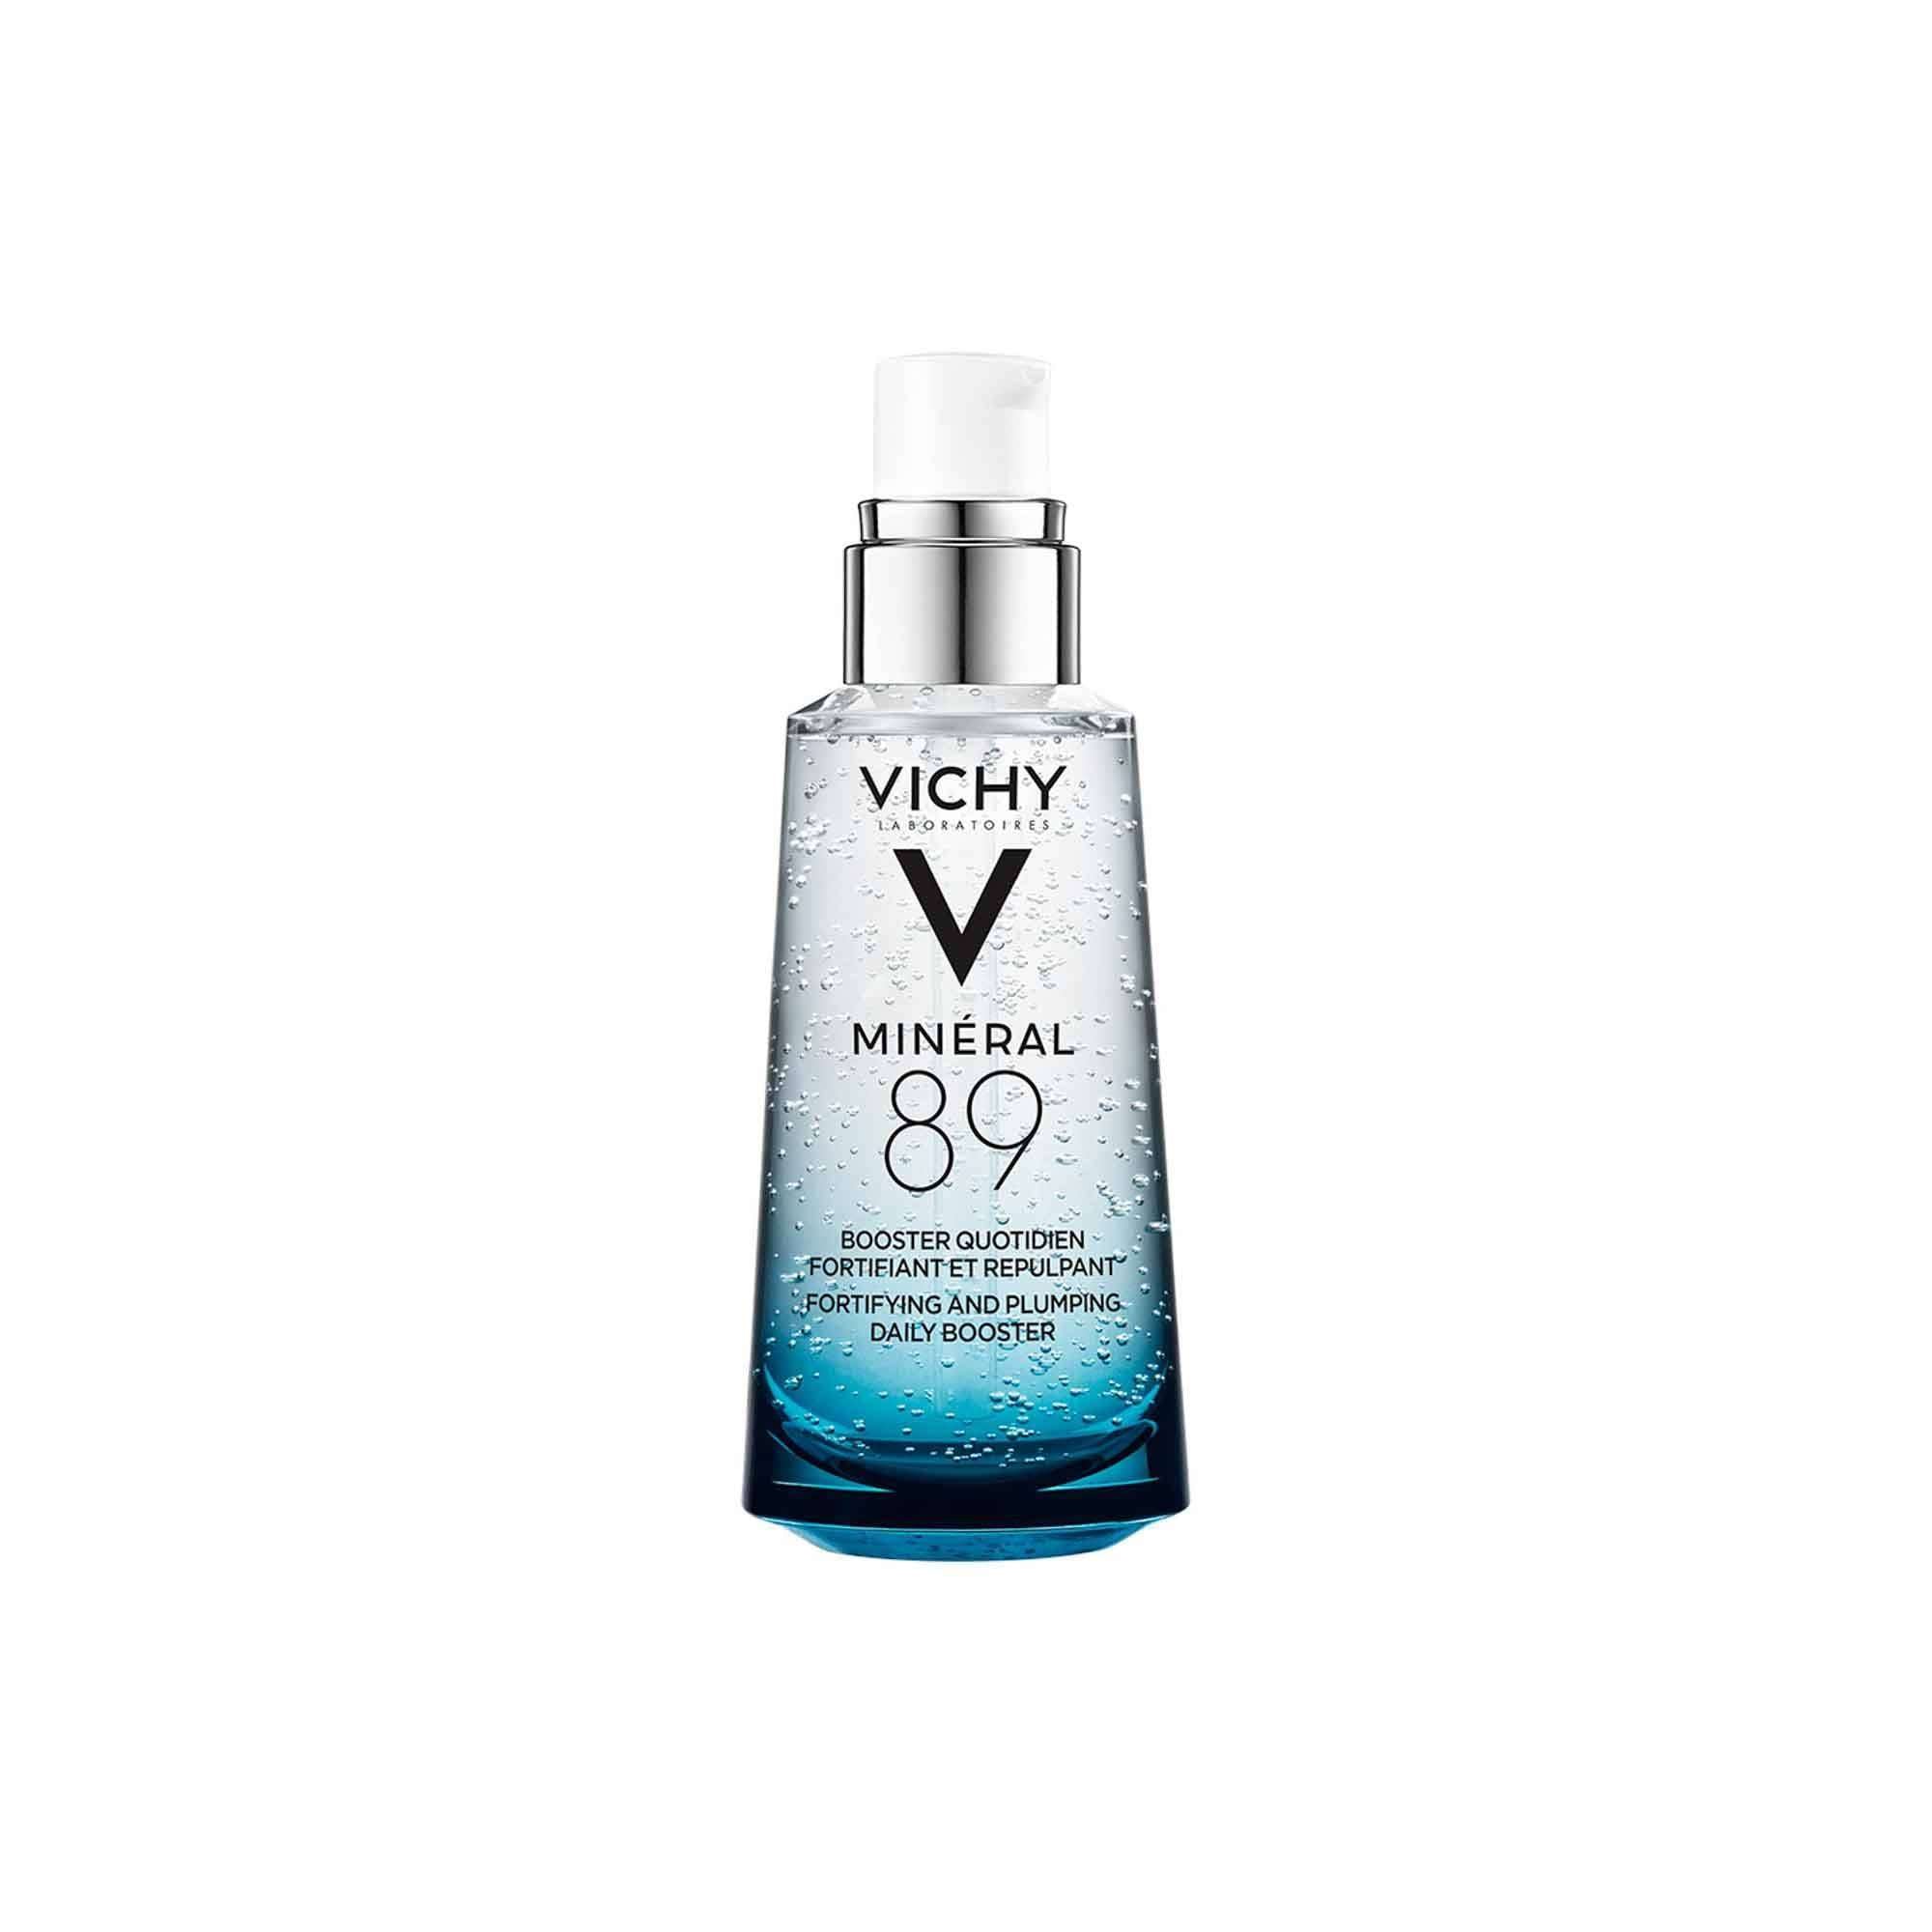 Vichy Mineral 89 Sérum Facial Concentrado 50ml